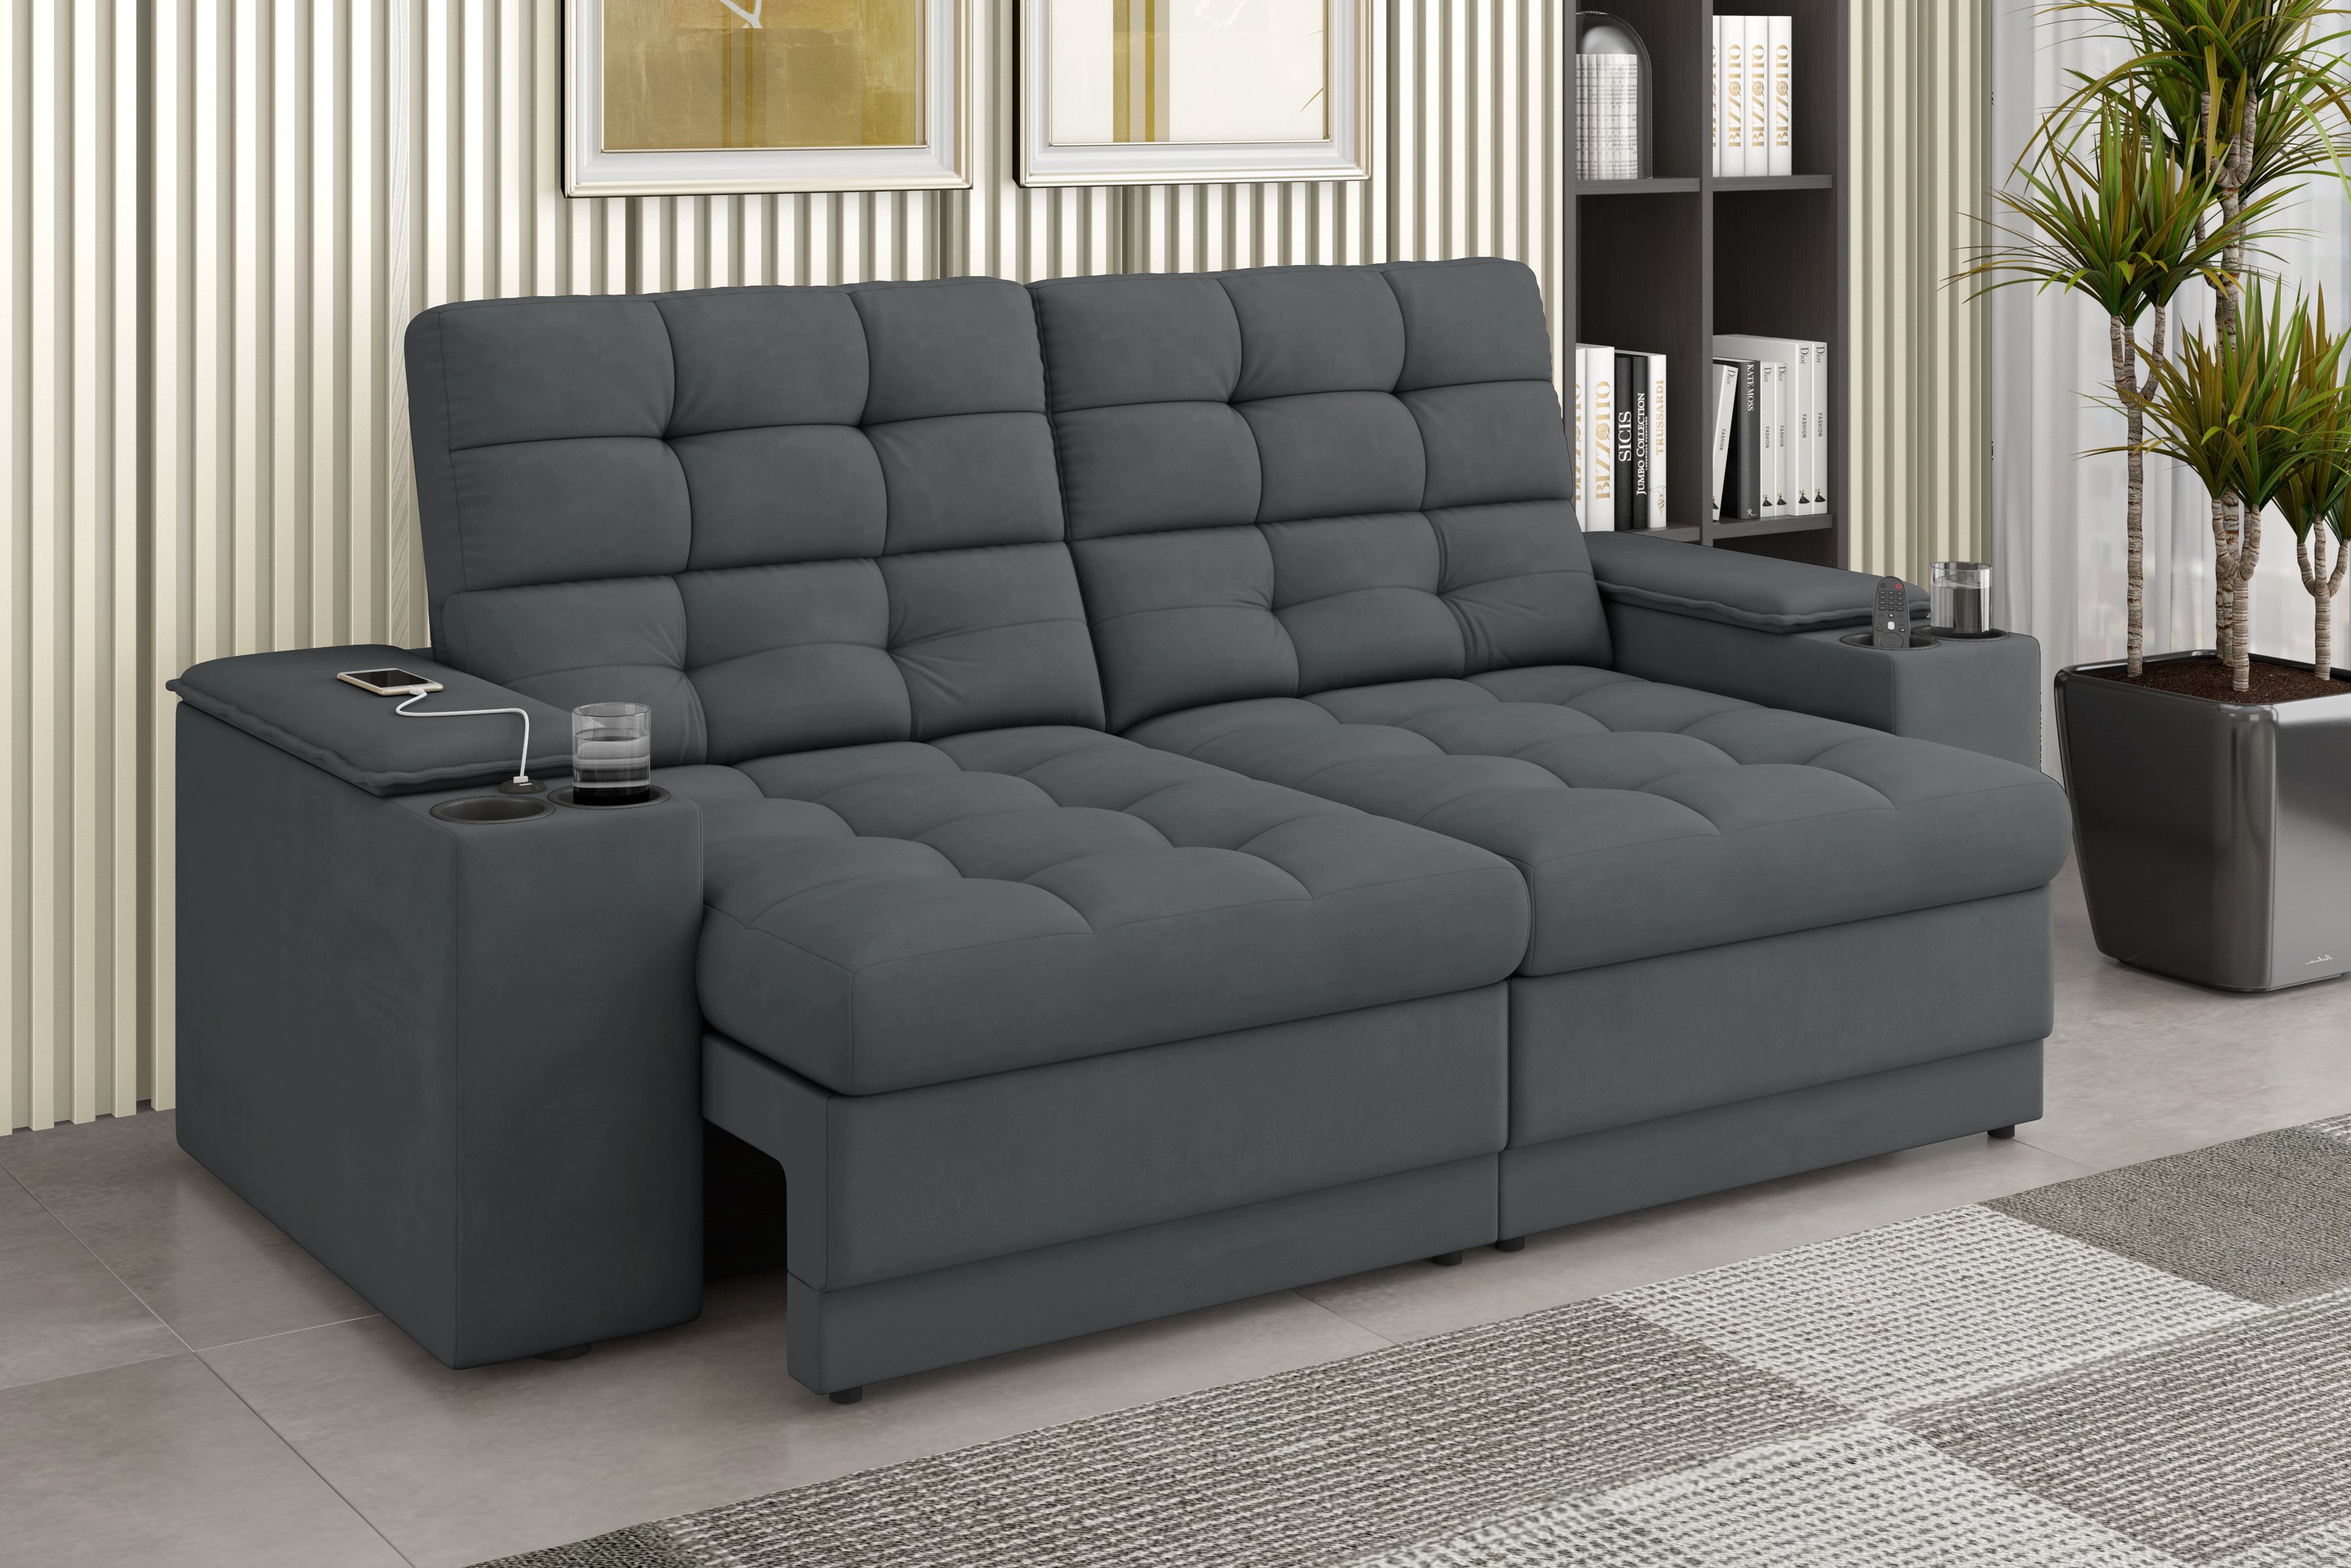 Sofá Confort Premium 1,70m Assento Retrátil/reclinável Porta Copos e Usb Suede Cinza - Xflex